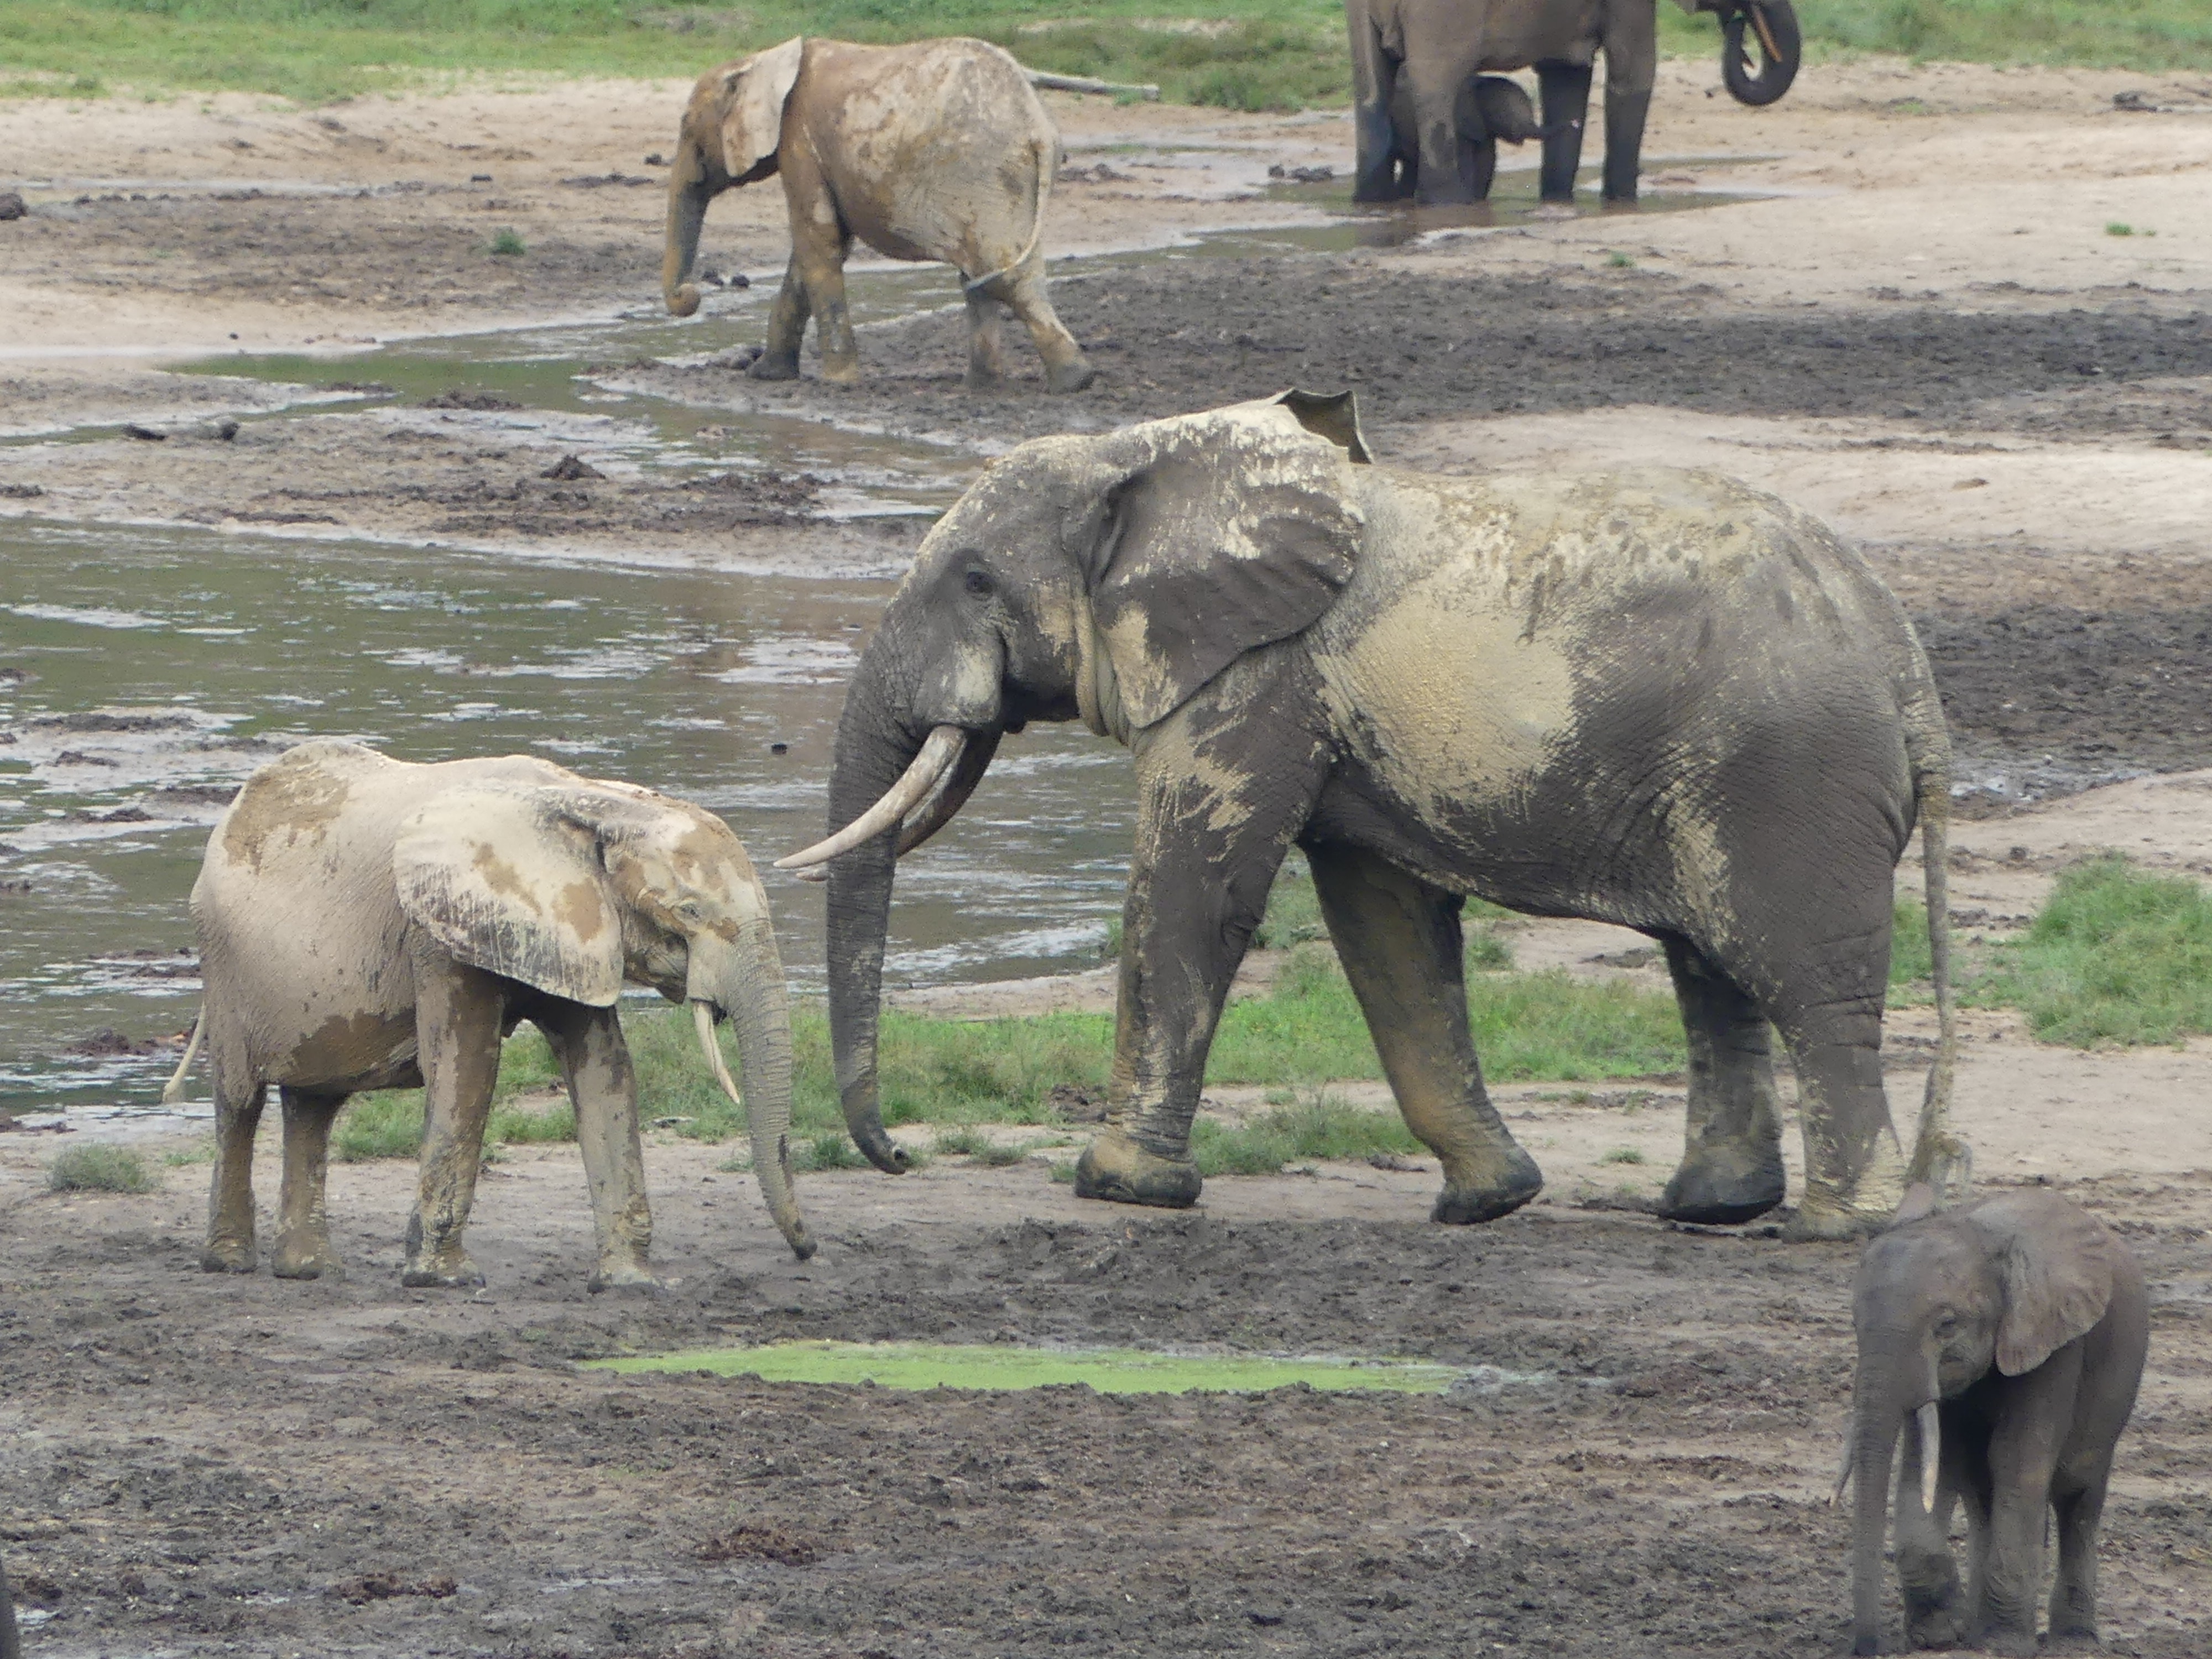 Elephants next to a mud hole.